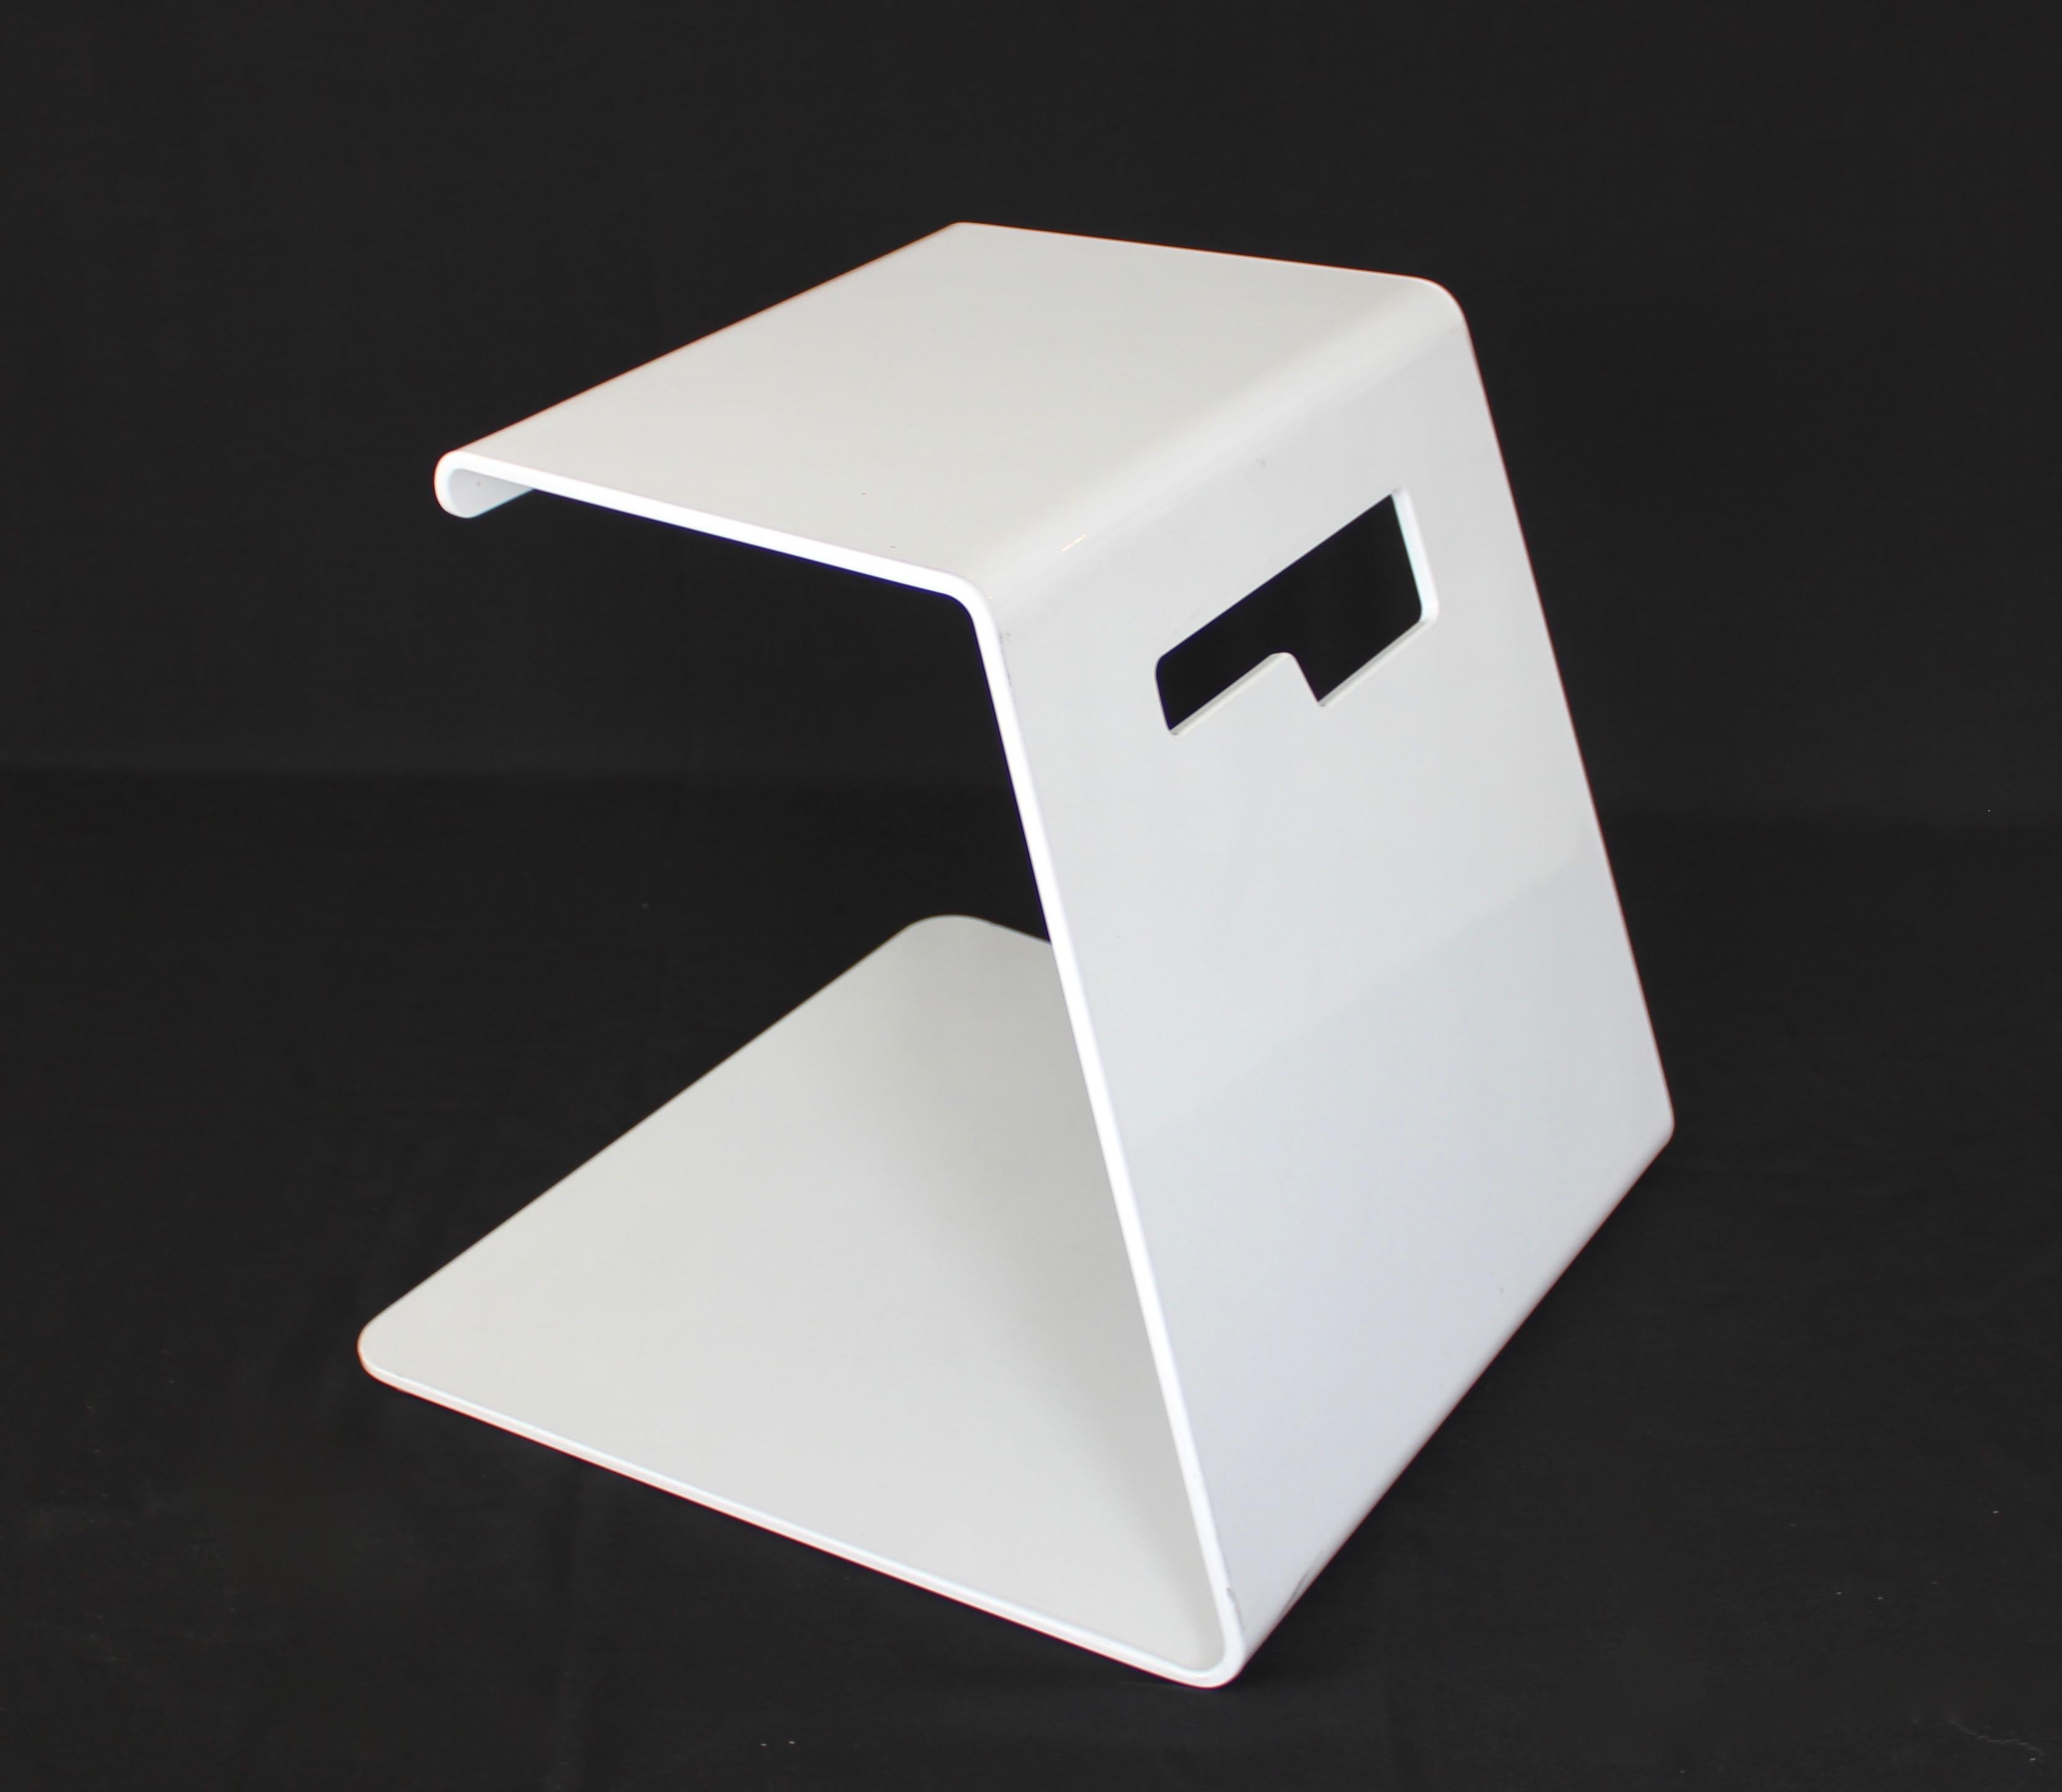 Jonathan Nesci, gefaltetes Aluminium, weiß pulverbeschichtet, Jack-Hocker. Der Jack-Hocker wurde erstmals 2007 auf dem ICCF vorgestellt und trug dazu bei, die Karriere des zeitgenössischen Designers Jonathan Nesci zu starten. 
In der Folge